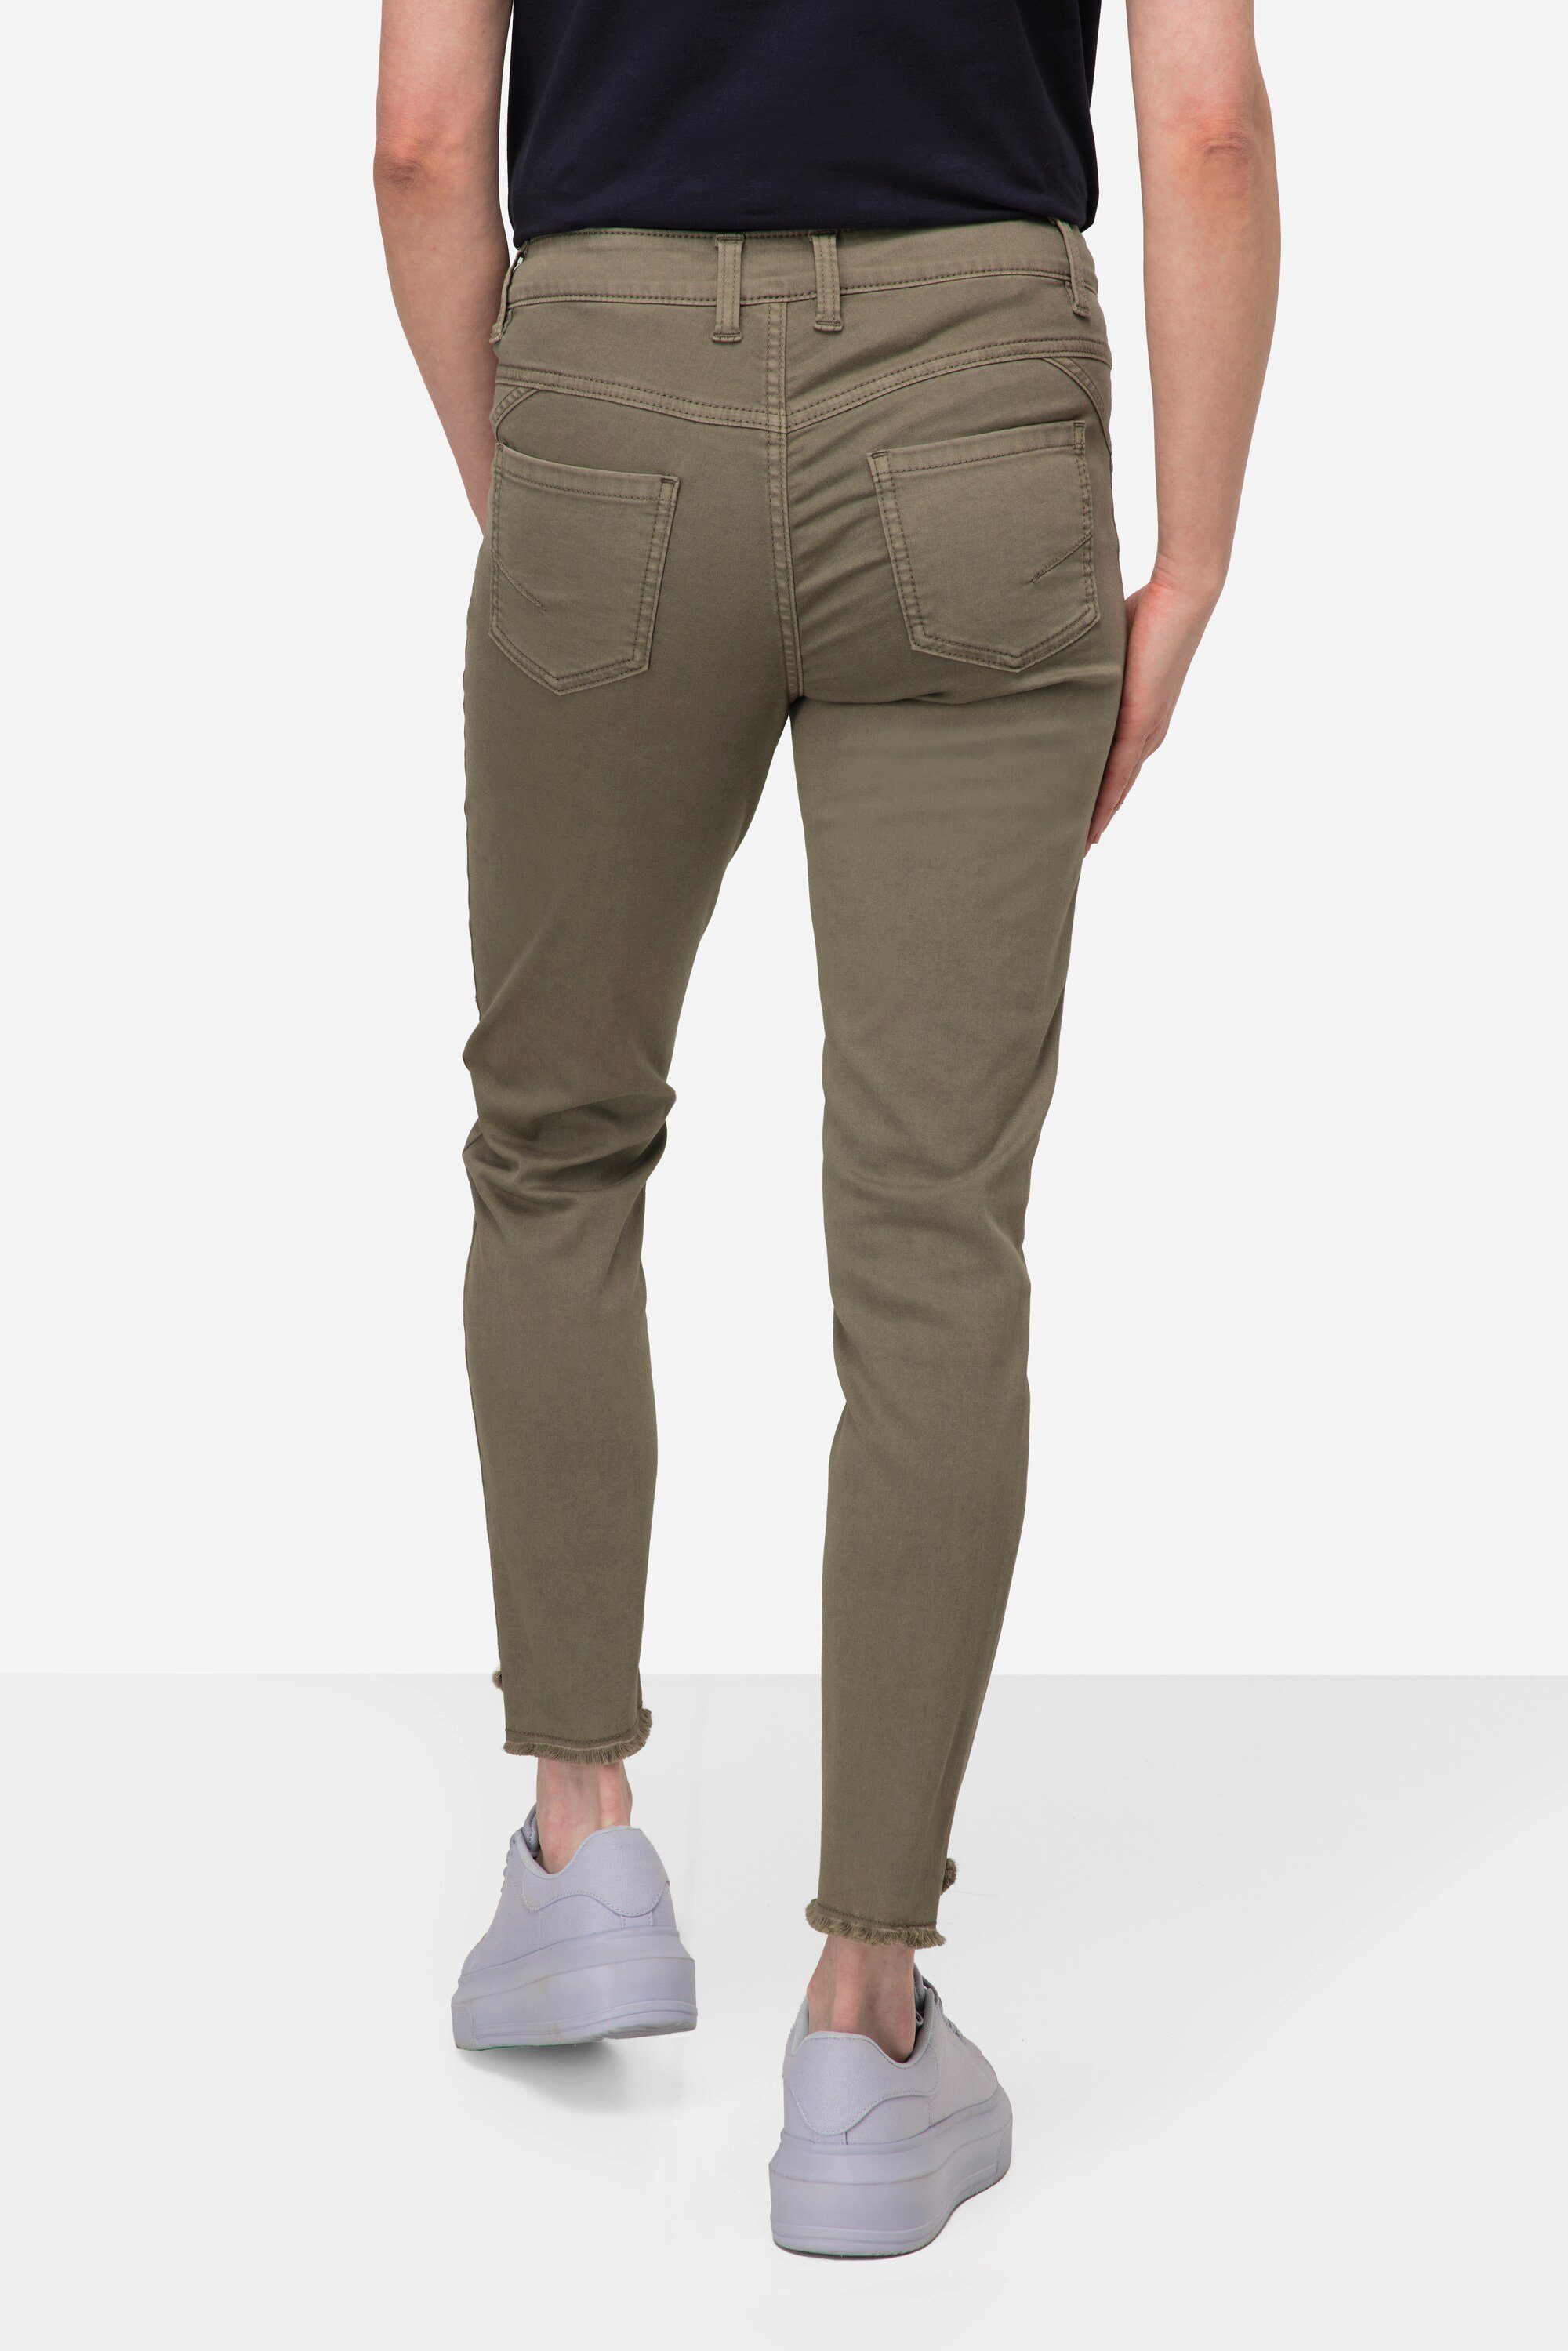 Julia schmale Passform Laurasøn Color grau 5-Pocket Röhrenjeans Jeans